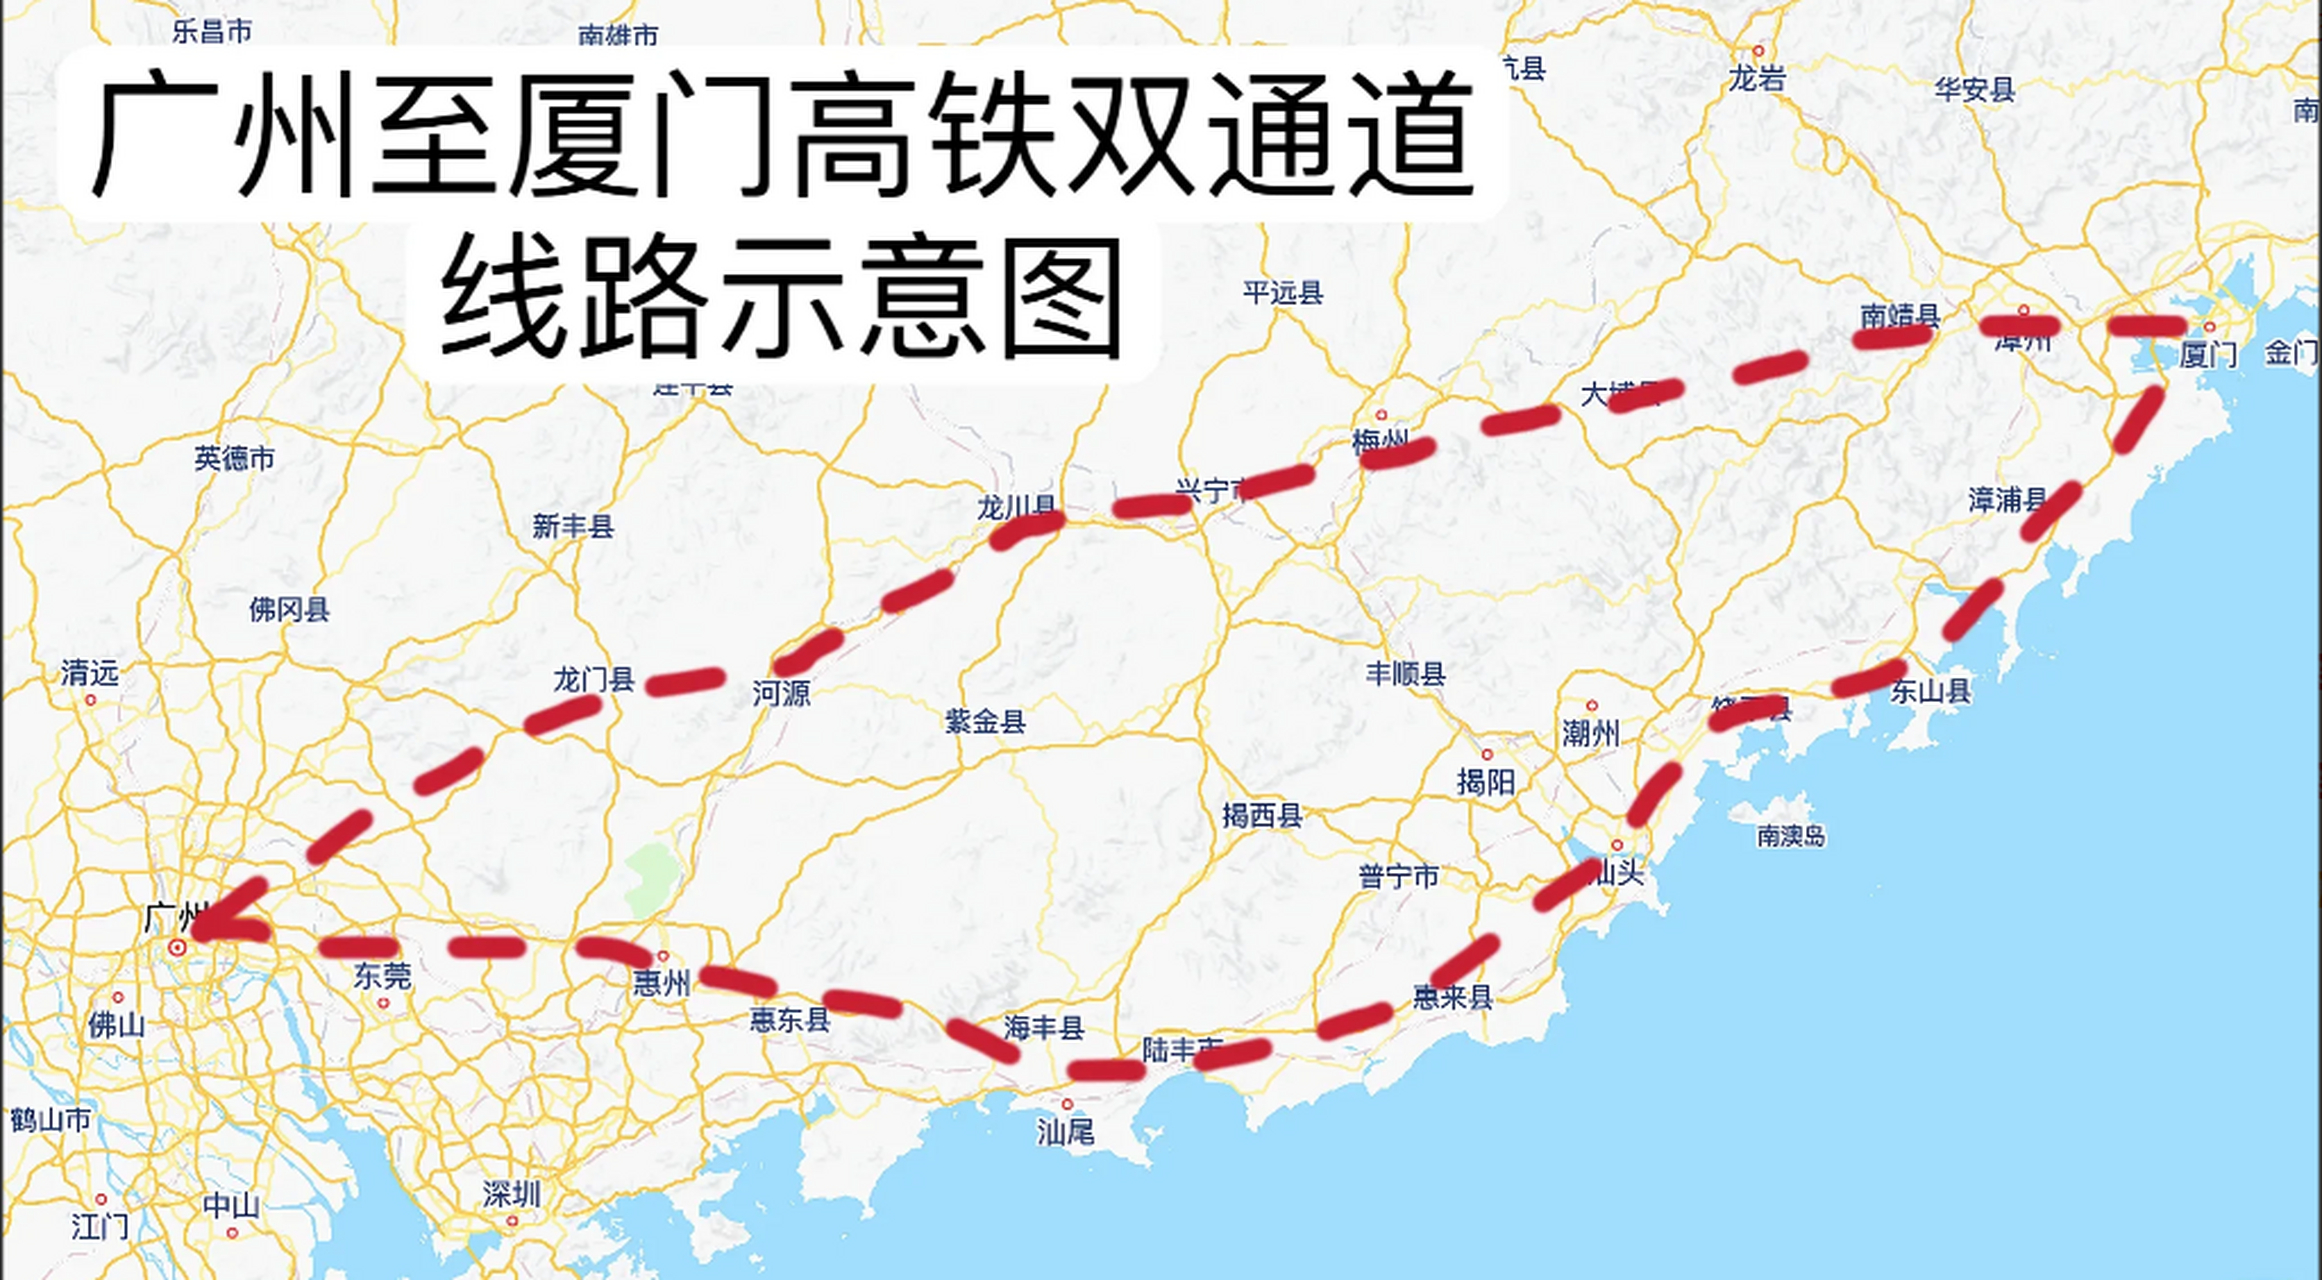 从地图上来看,梅州至漳州这条高铁建成后,对接在建设的广河高铁和龙梅